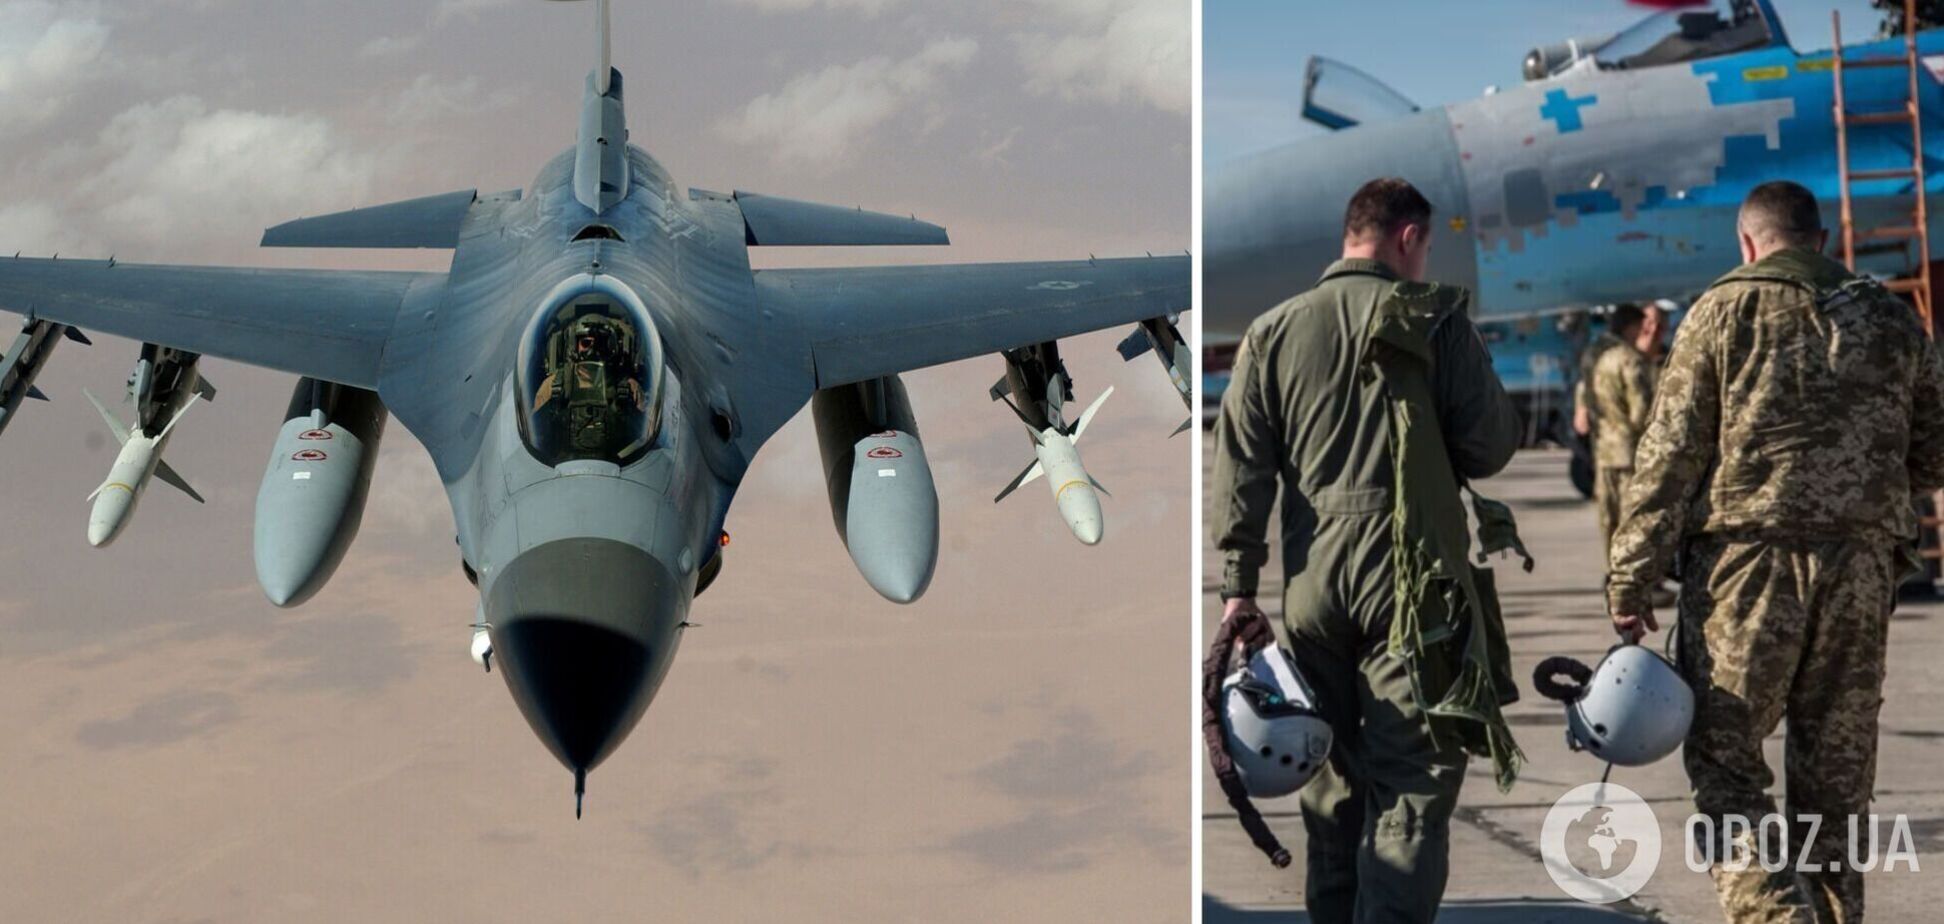 Обучение украинских пилотов на F-16 в США и Дании завершается – Воздушные силы